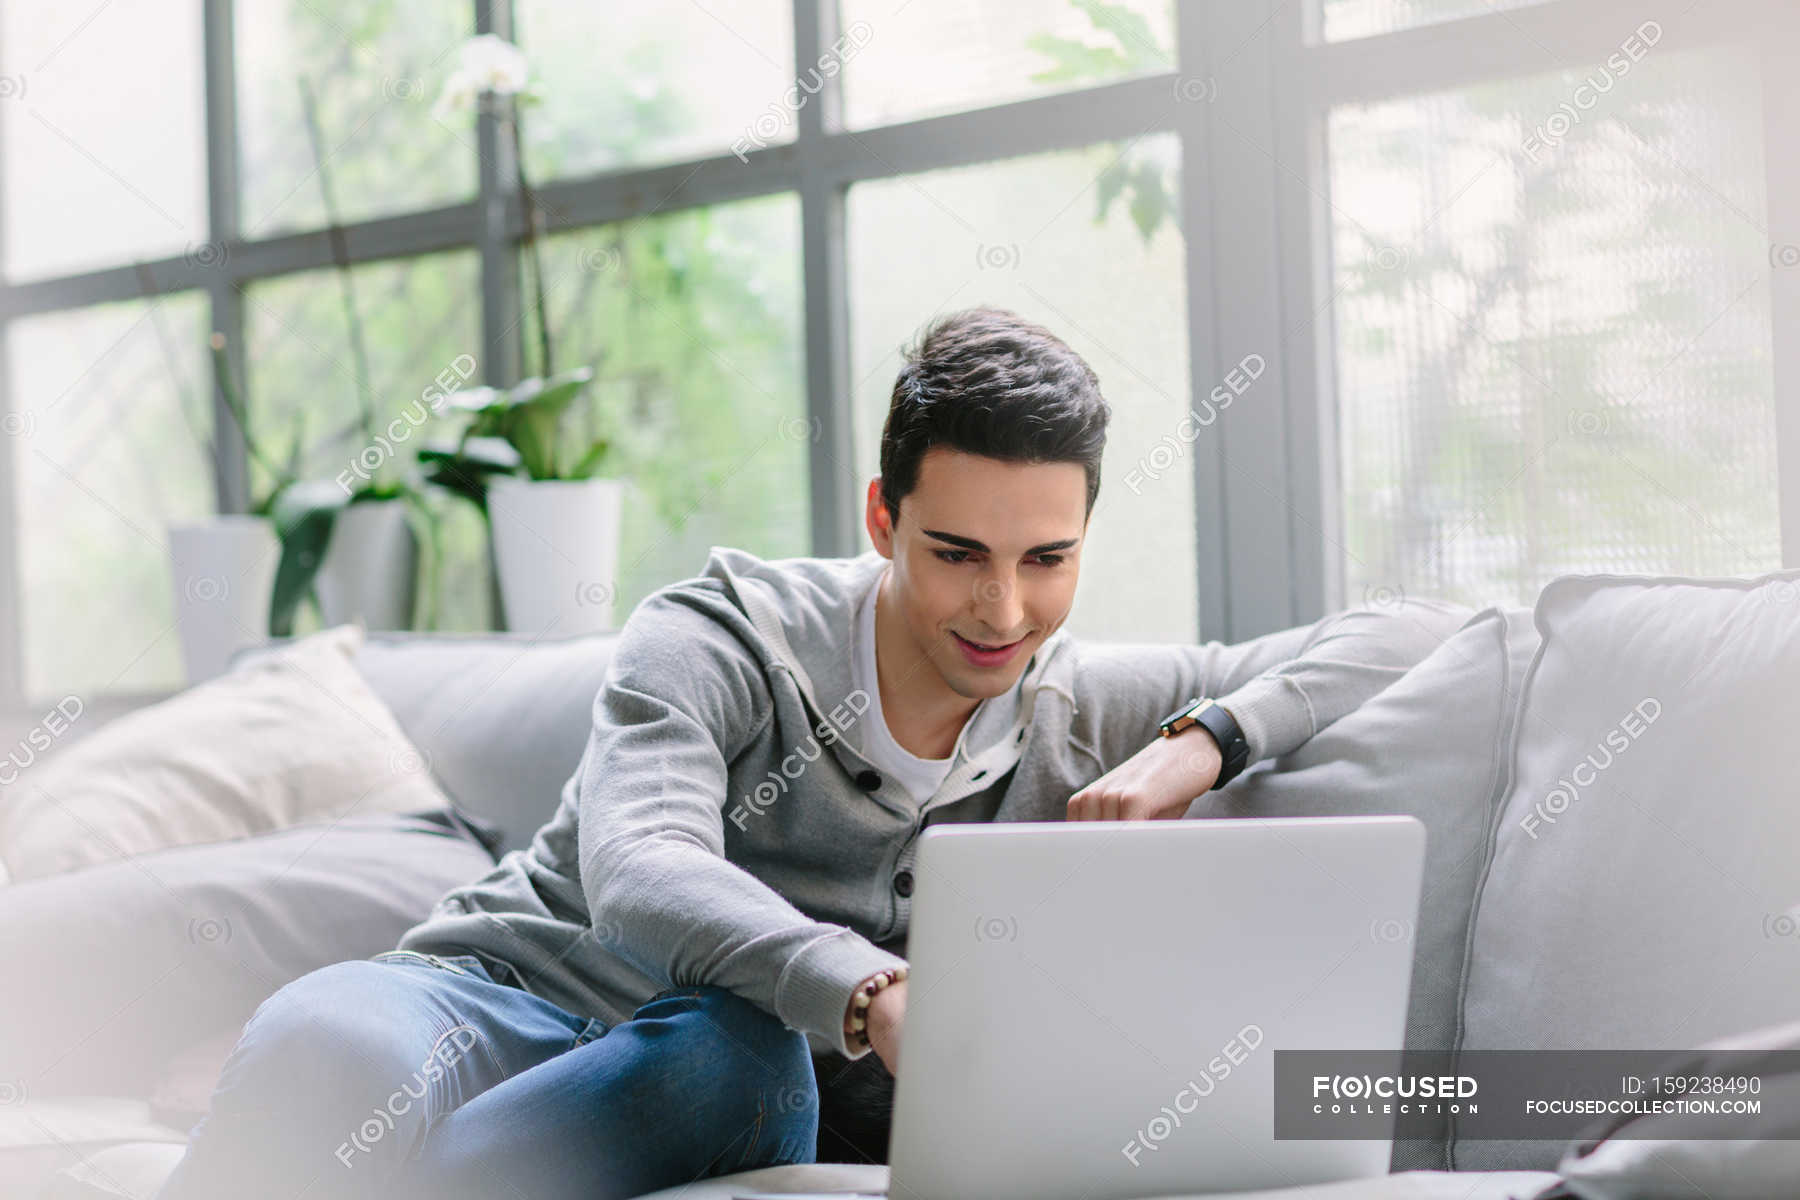 Человек сидит на диване с ноутбуком — Естественное освещение, бизнес -Stock Photo